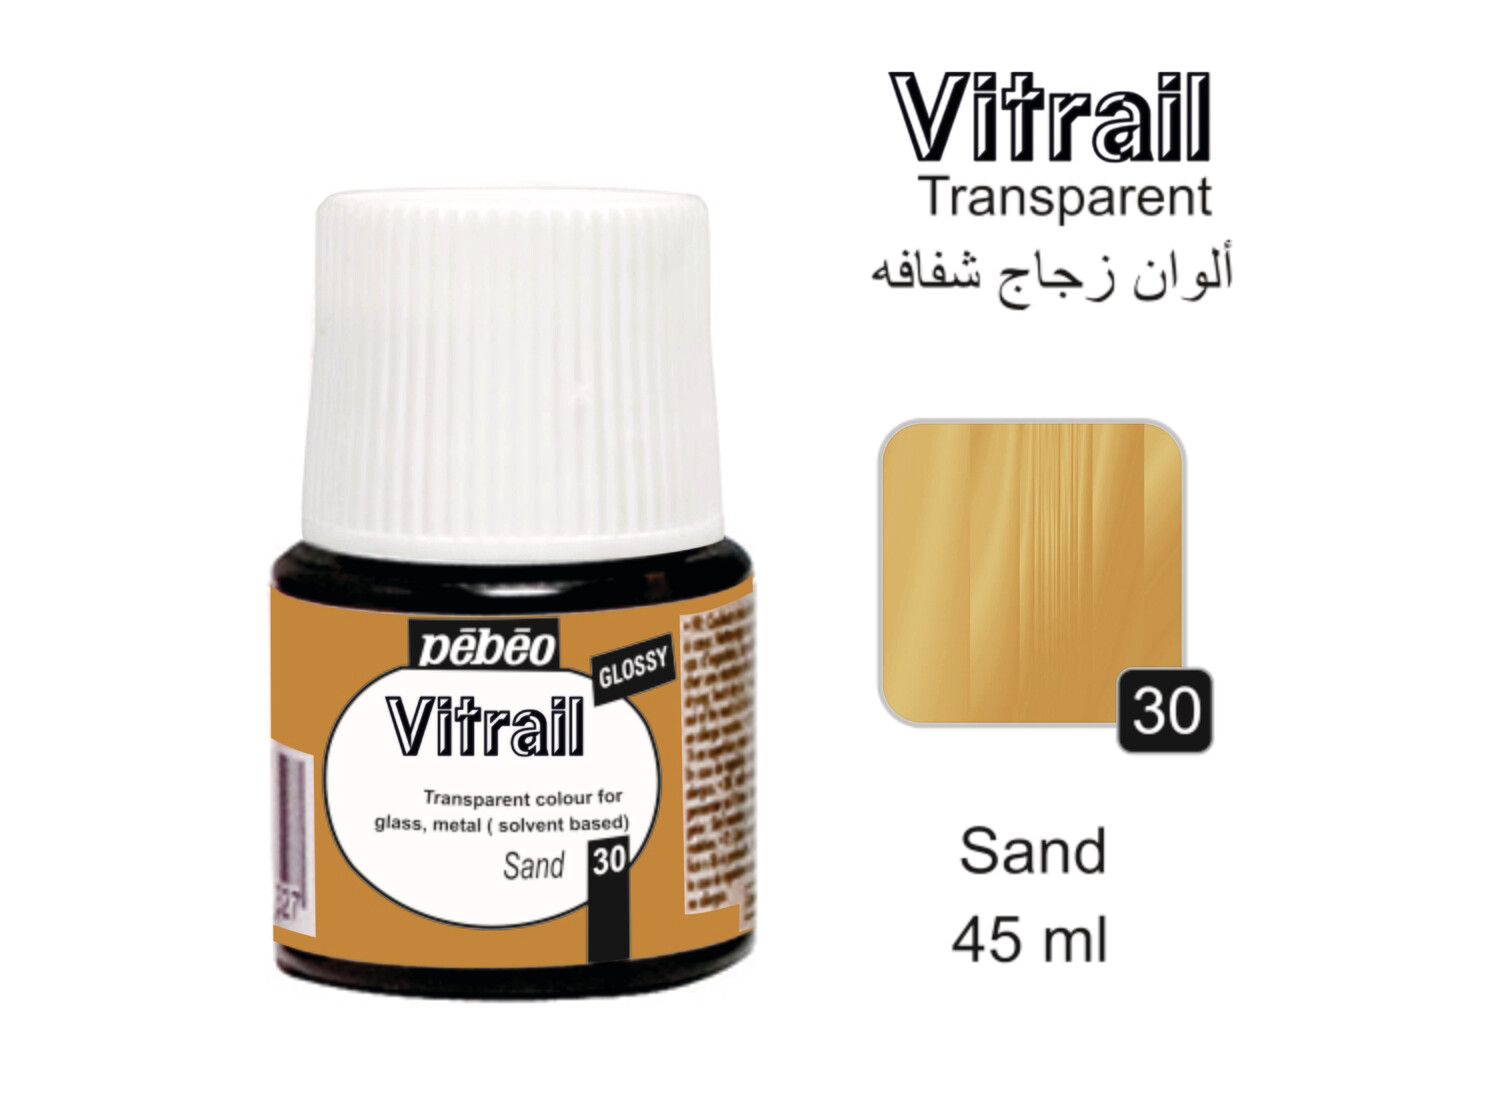 VITRAIL glass colors Sand No. 30, 45 ml